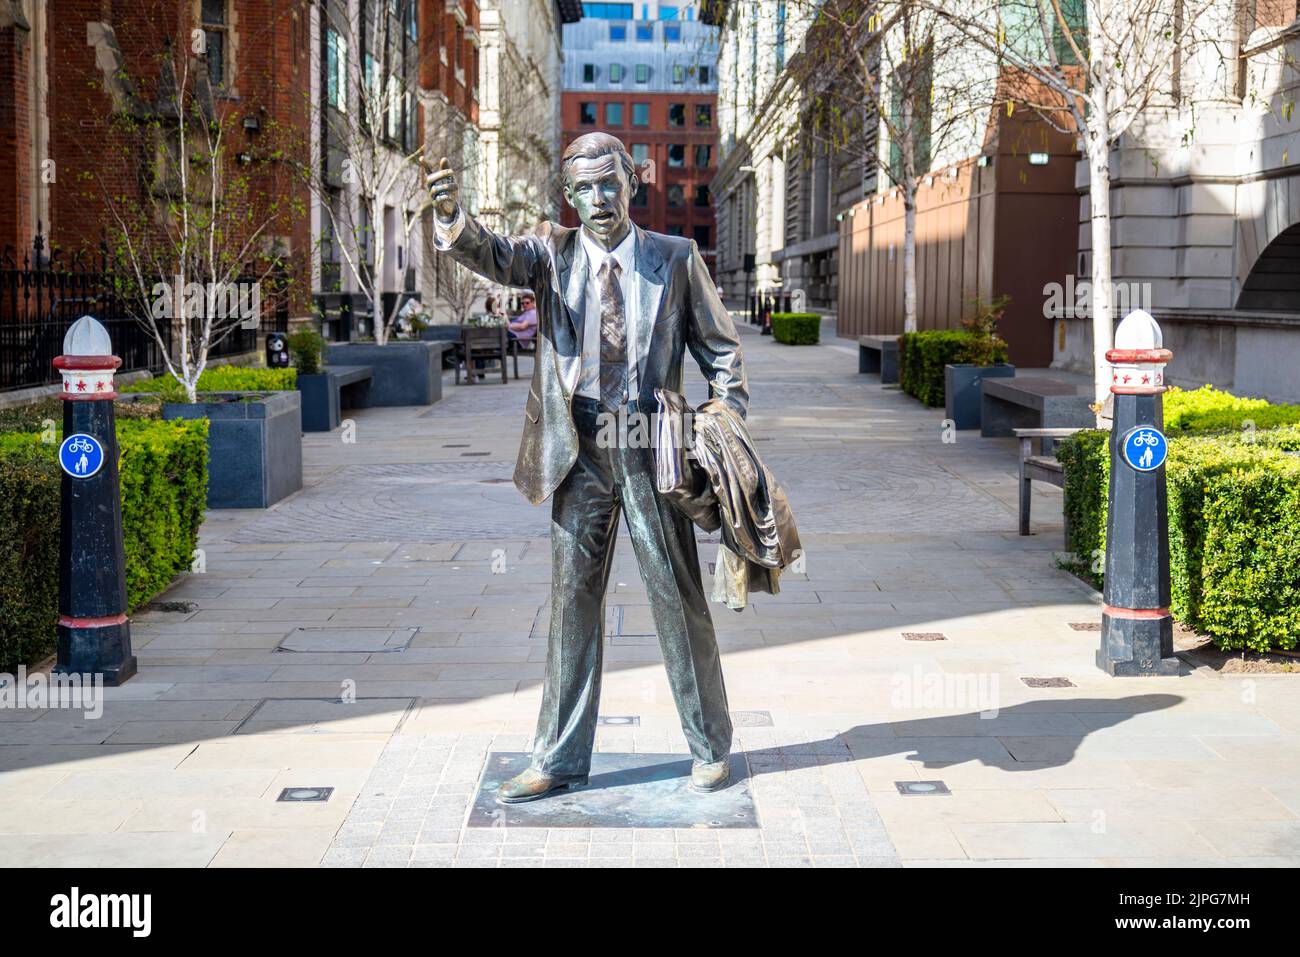 Taxi, el título de una estatua de bronce de John Seward Johnson Jr, que congela a un trabajador de la ciudad, saludando un taxi. 1983 fecha. En Blackfriars, Londres, Reino Unido Foto de stock